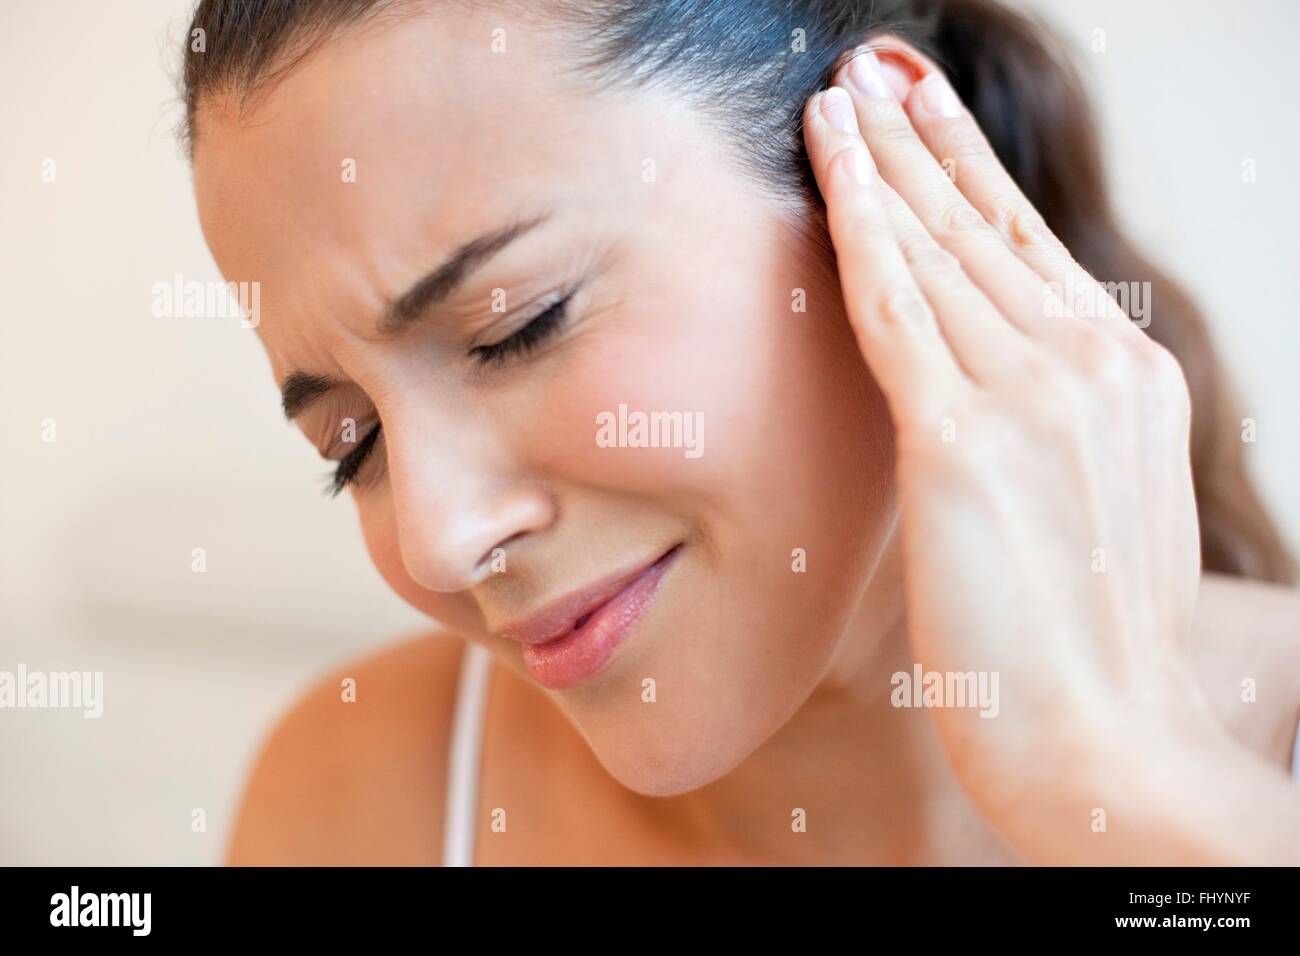 Modelo liberado. Mujer tocando su oído con dolor de oído. Foto de stock